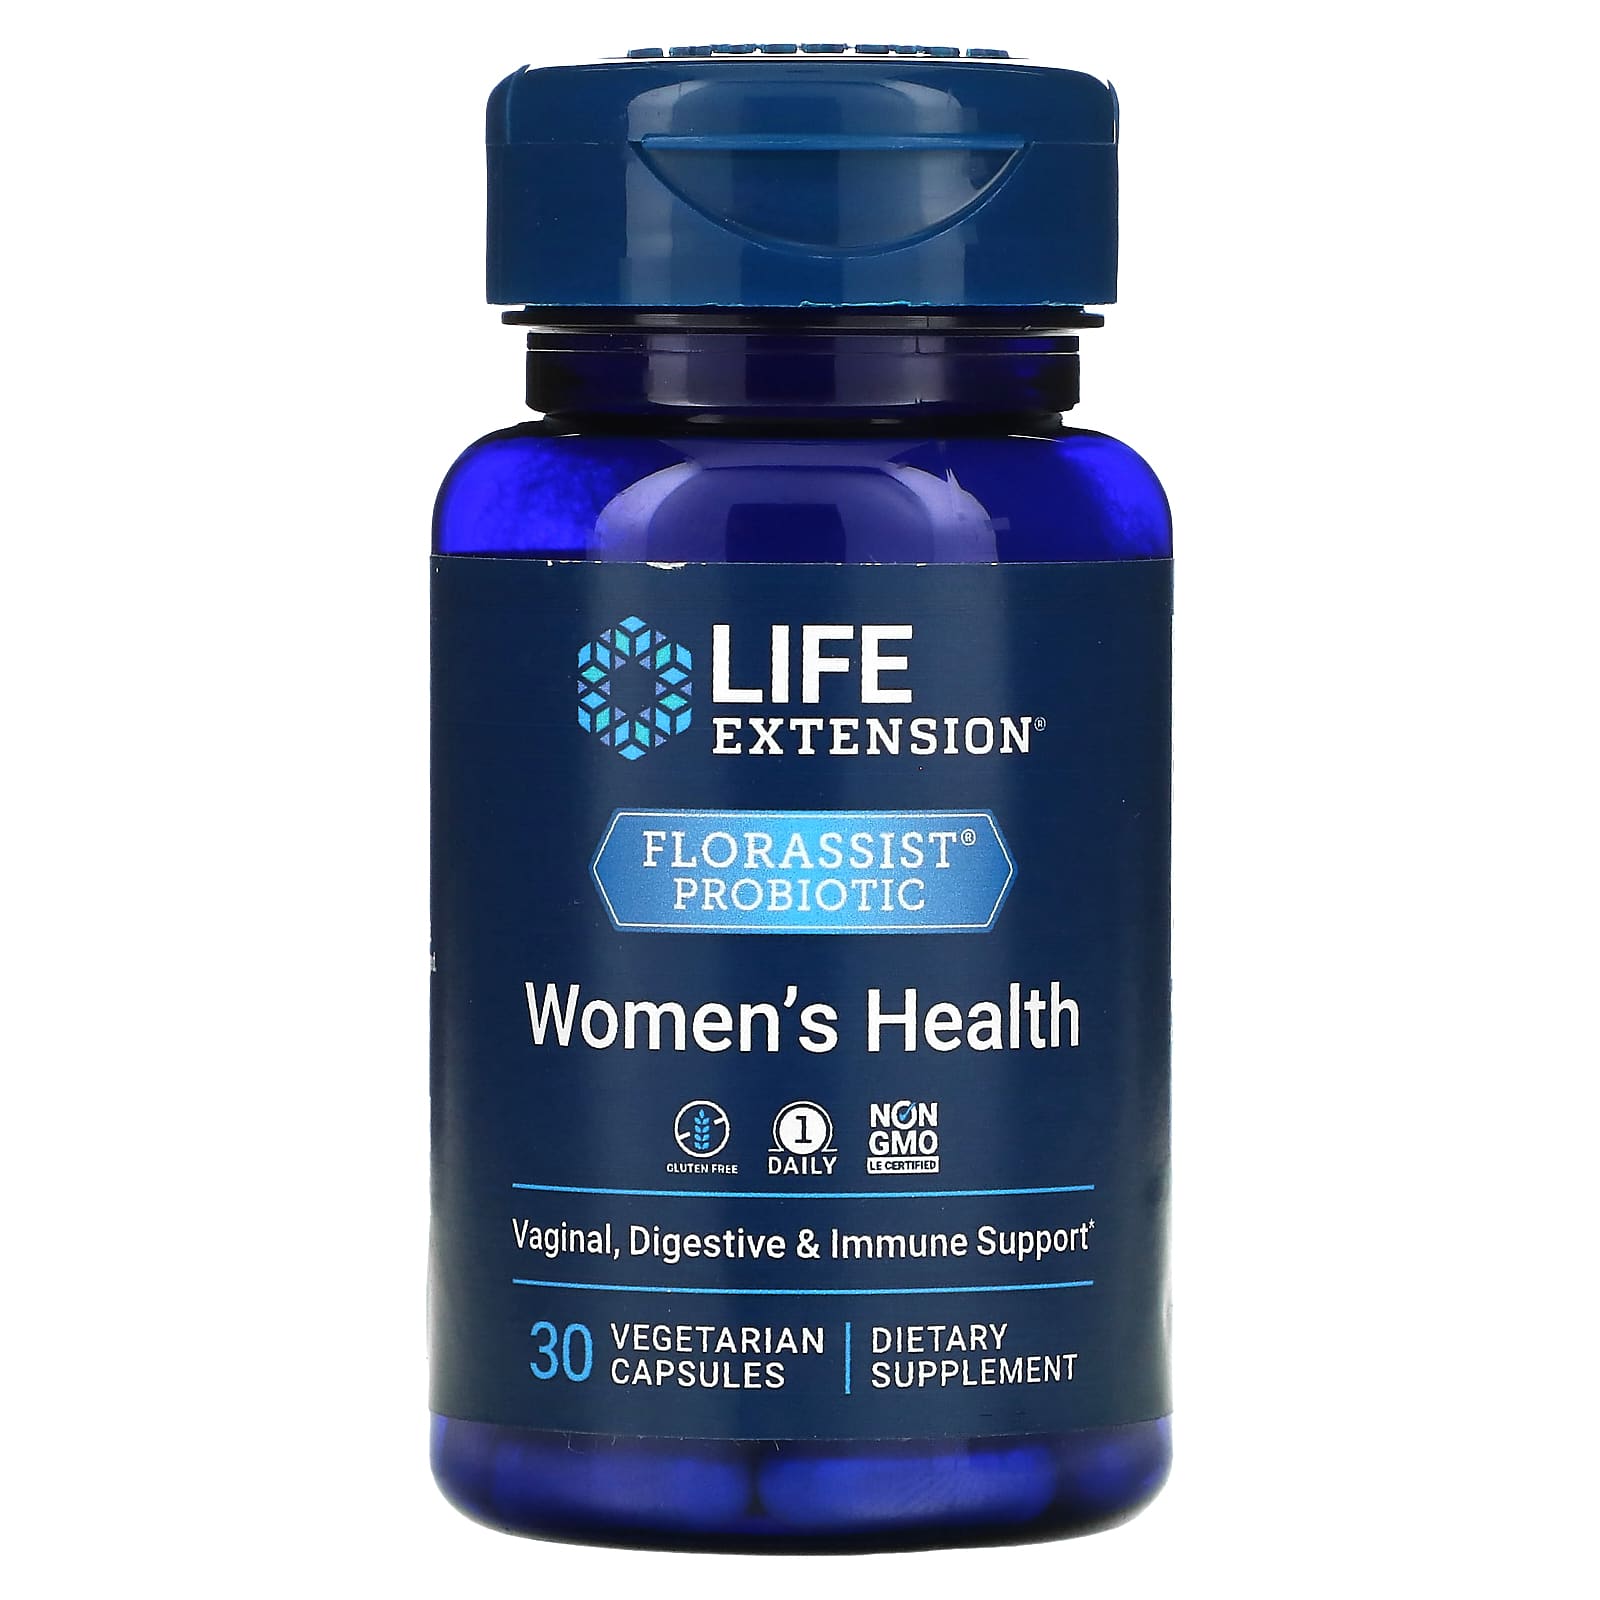 Пробиотик Life Extension для здоровья женщин, 30 вегетарианских капсул renew life пробиотик для женщин 60 вегетарианских капсул